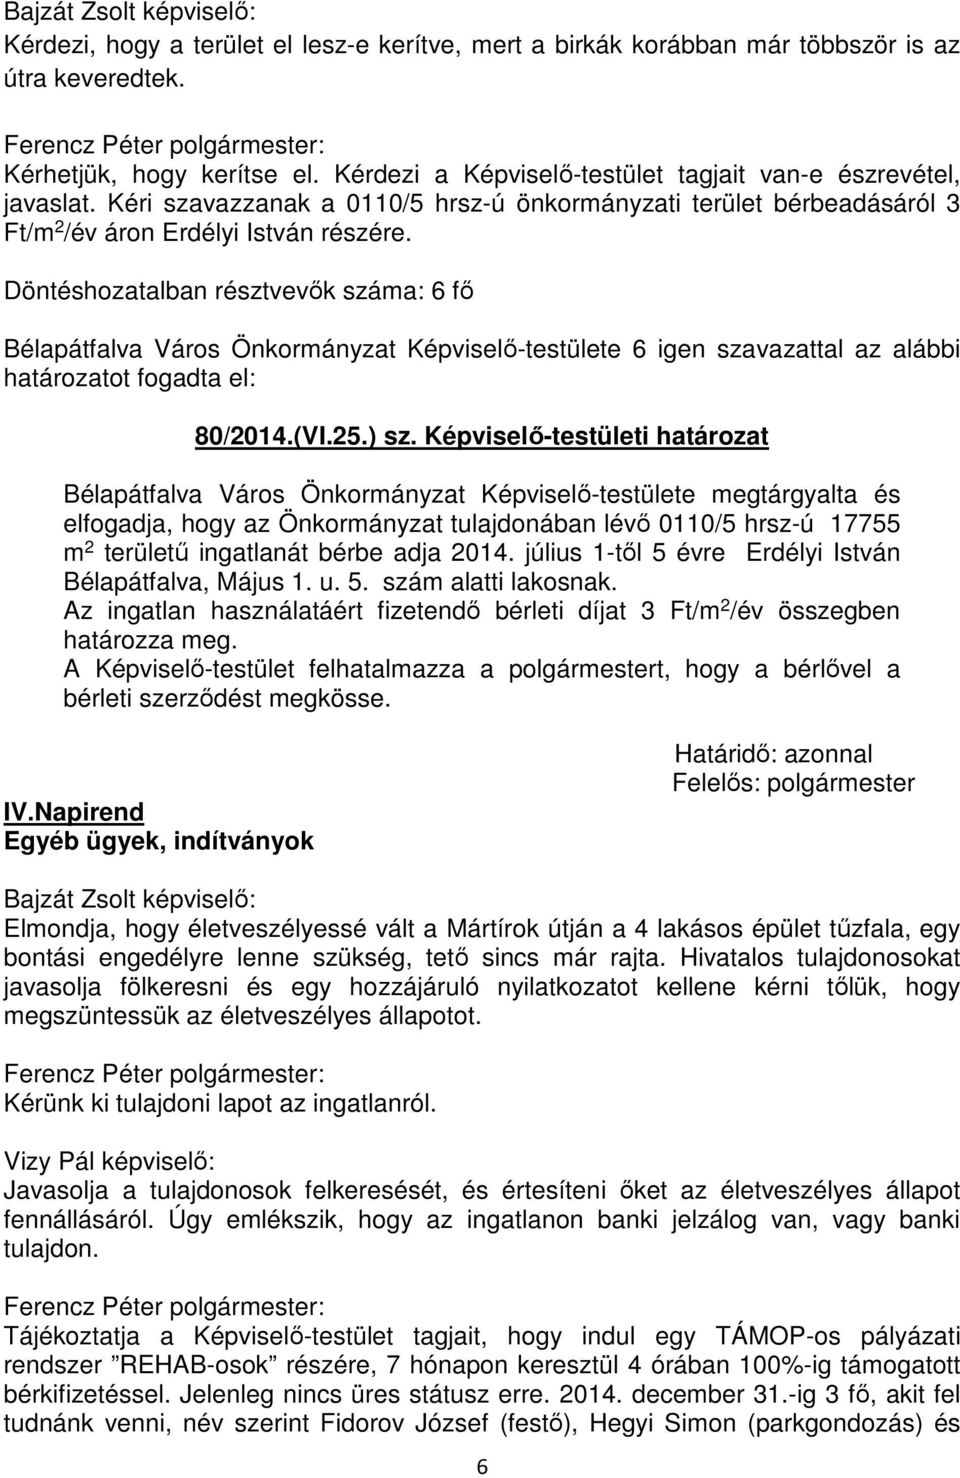 Bélapátfalva Város Önkormányzat Képviselő-testülete 6 igen szavazattal az alábbi 80/2014.(VI.25.) sz.